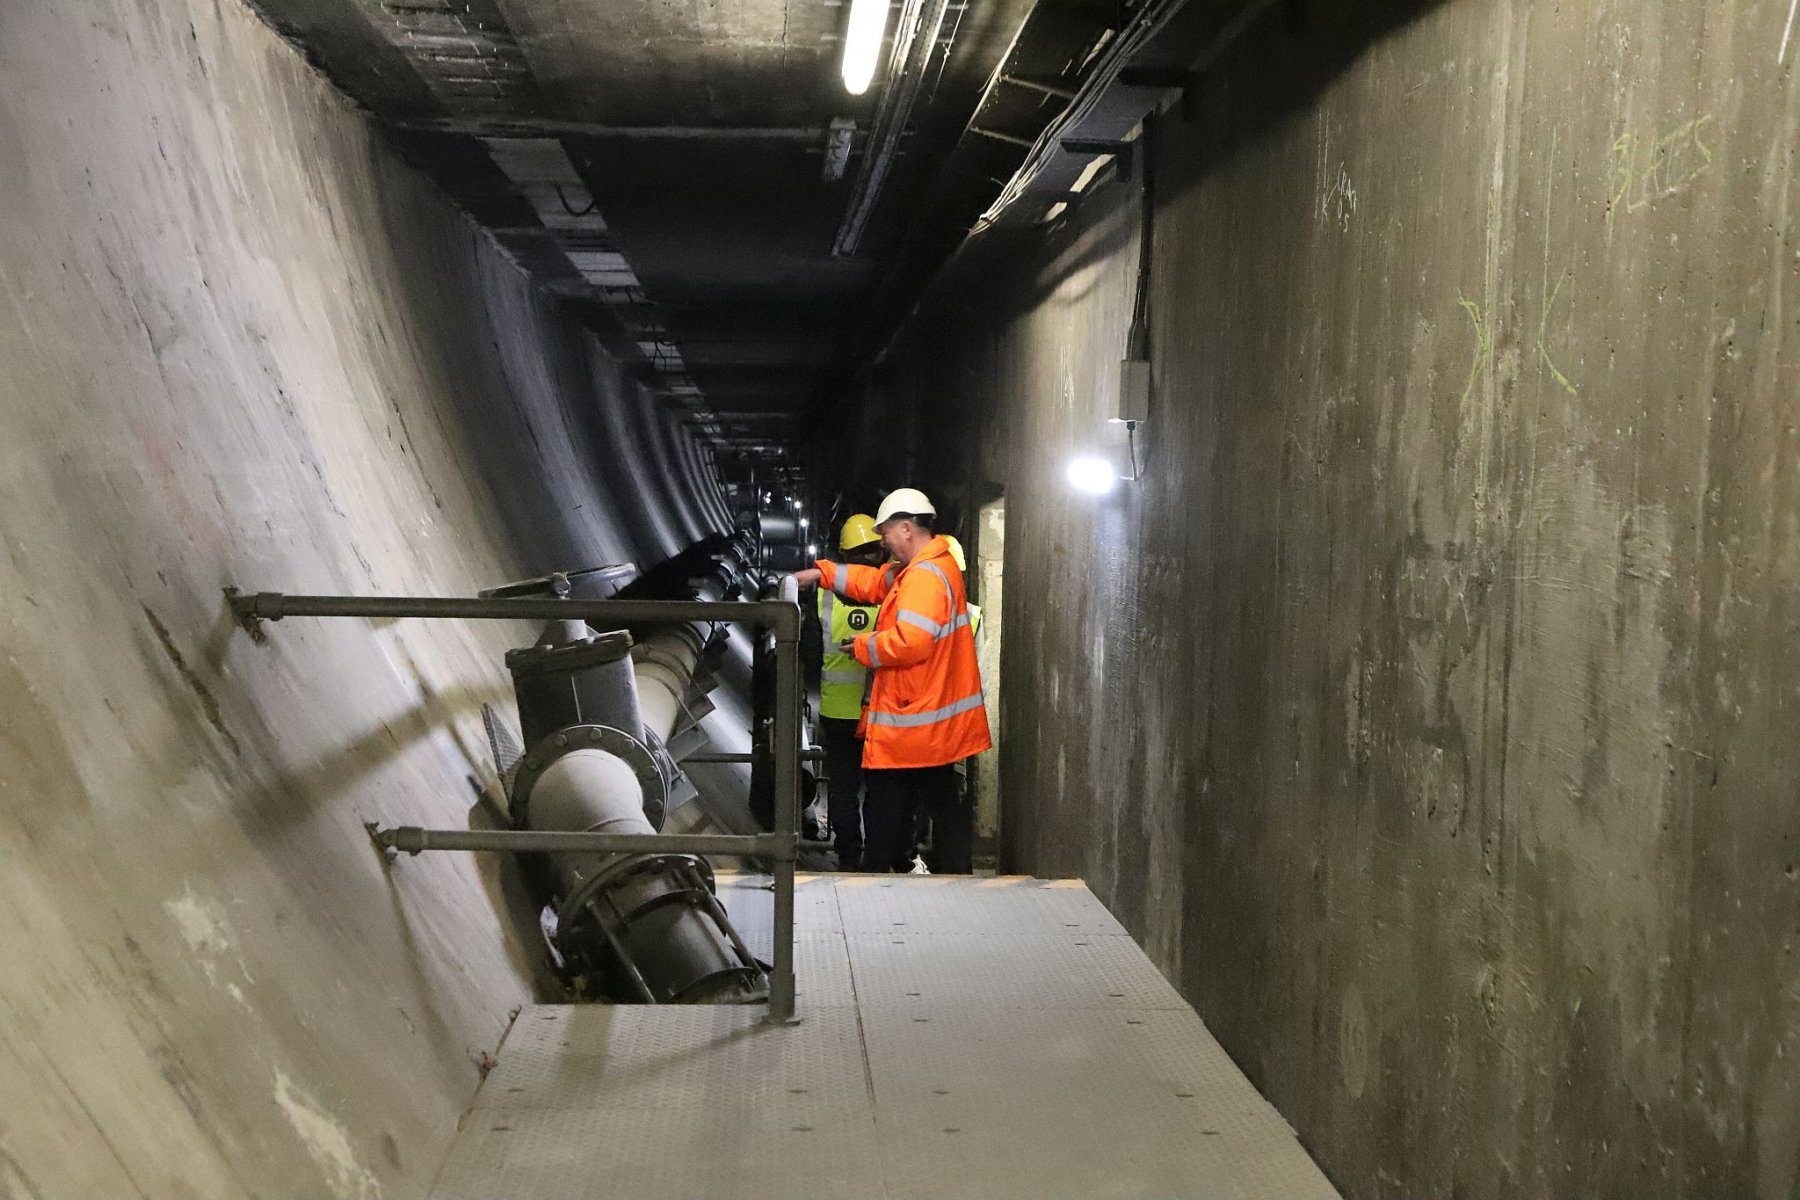 Liverpool Birkenhead Queensway Tunnel behind the scenes tour